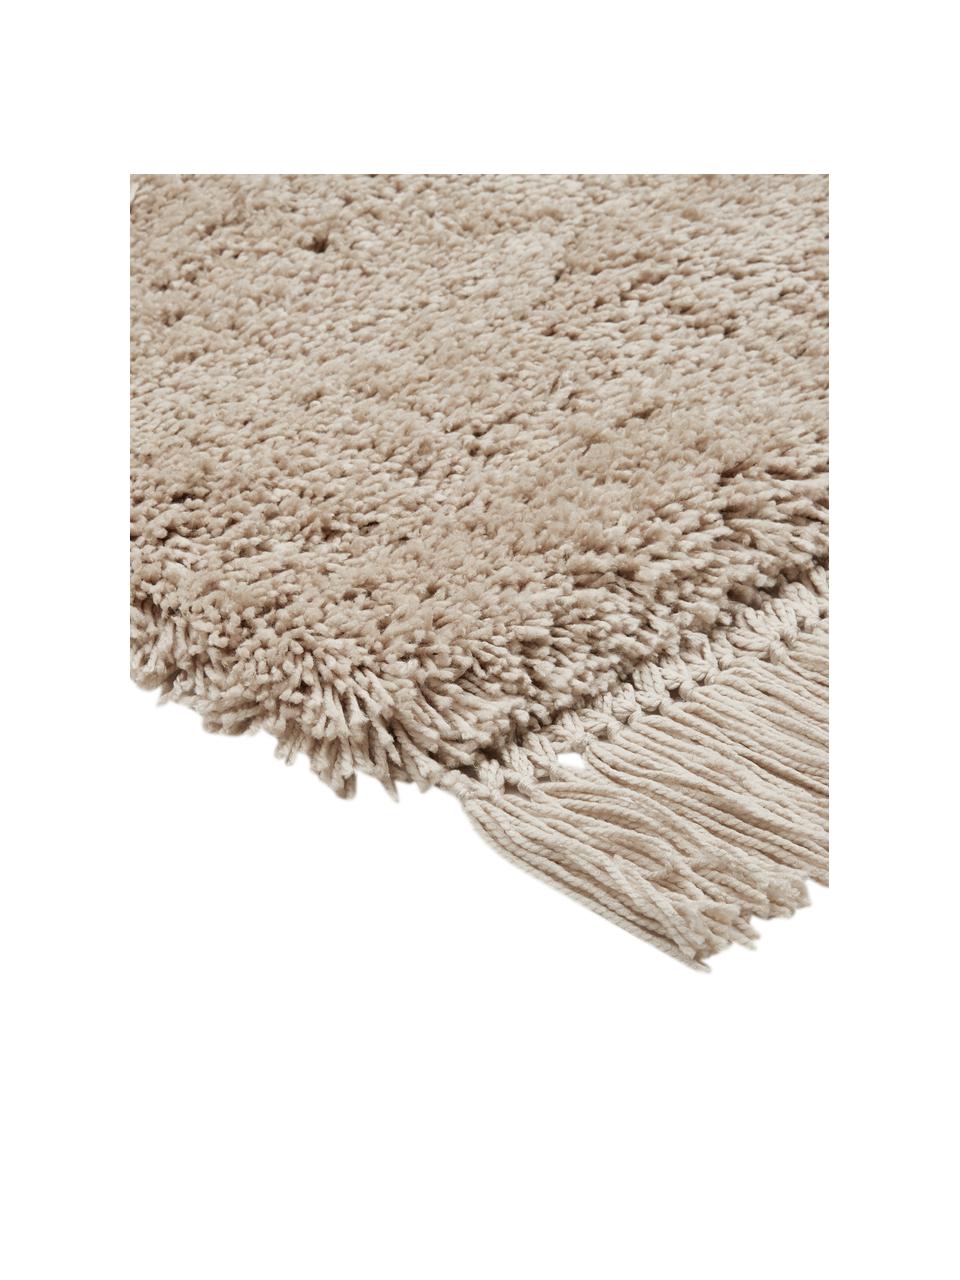 Flauschiger Hochflor-Teppich Dreamy mit Fransen, Flor: 100% Polyester, Creme, B 160 x L 230 cm (Größe M)